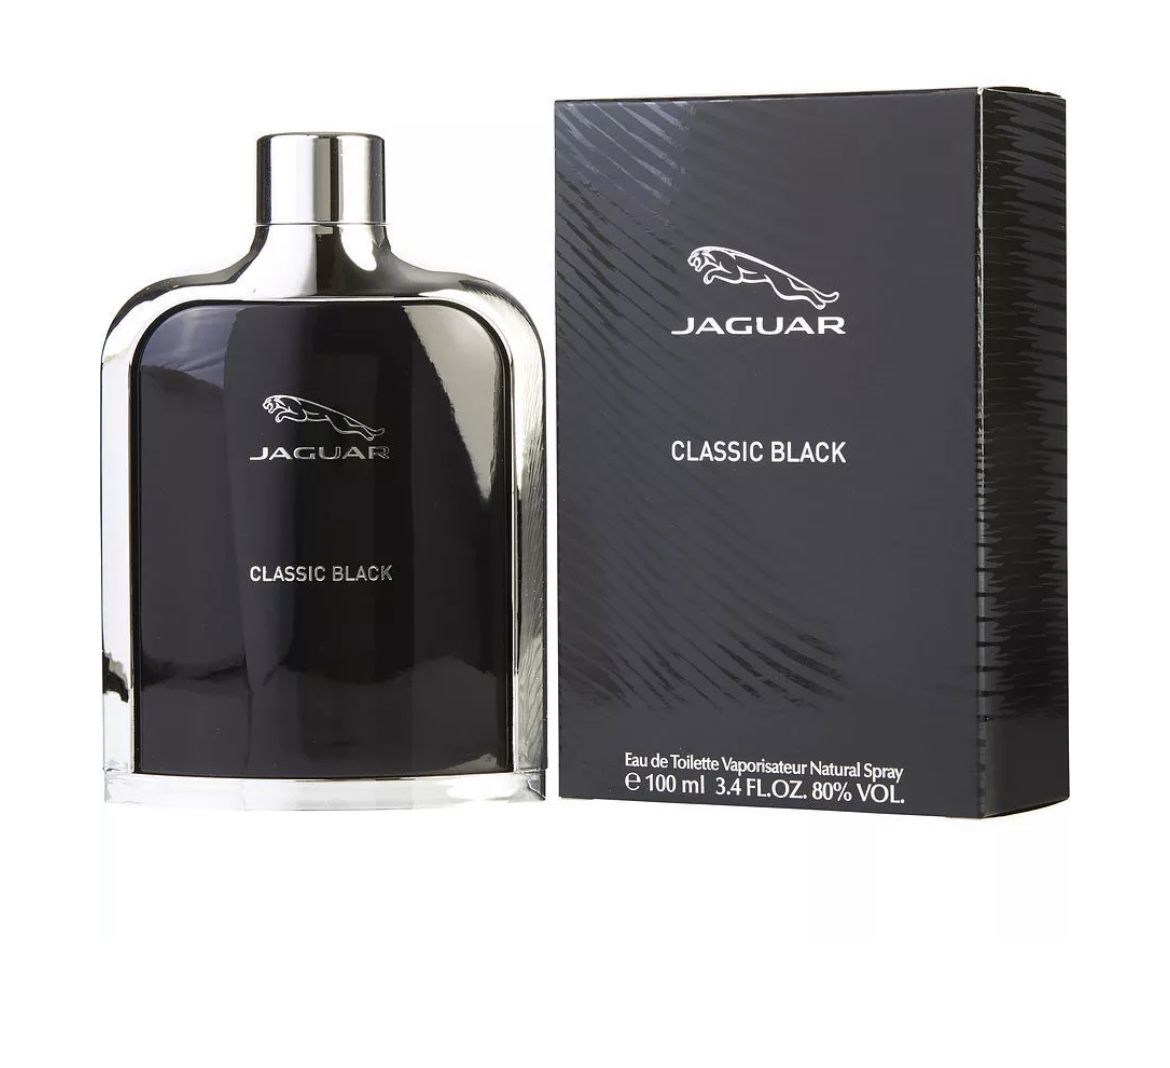  Jaguar Classic Black Eau De Toilette Natural Spray 3.4 oz / 100 ml NIB Sealed for men 